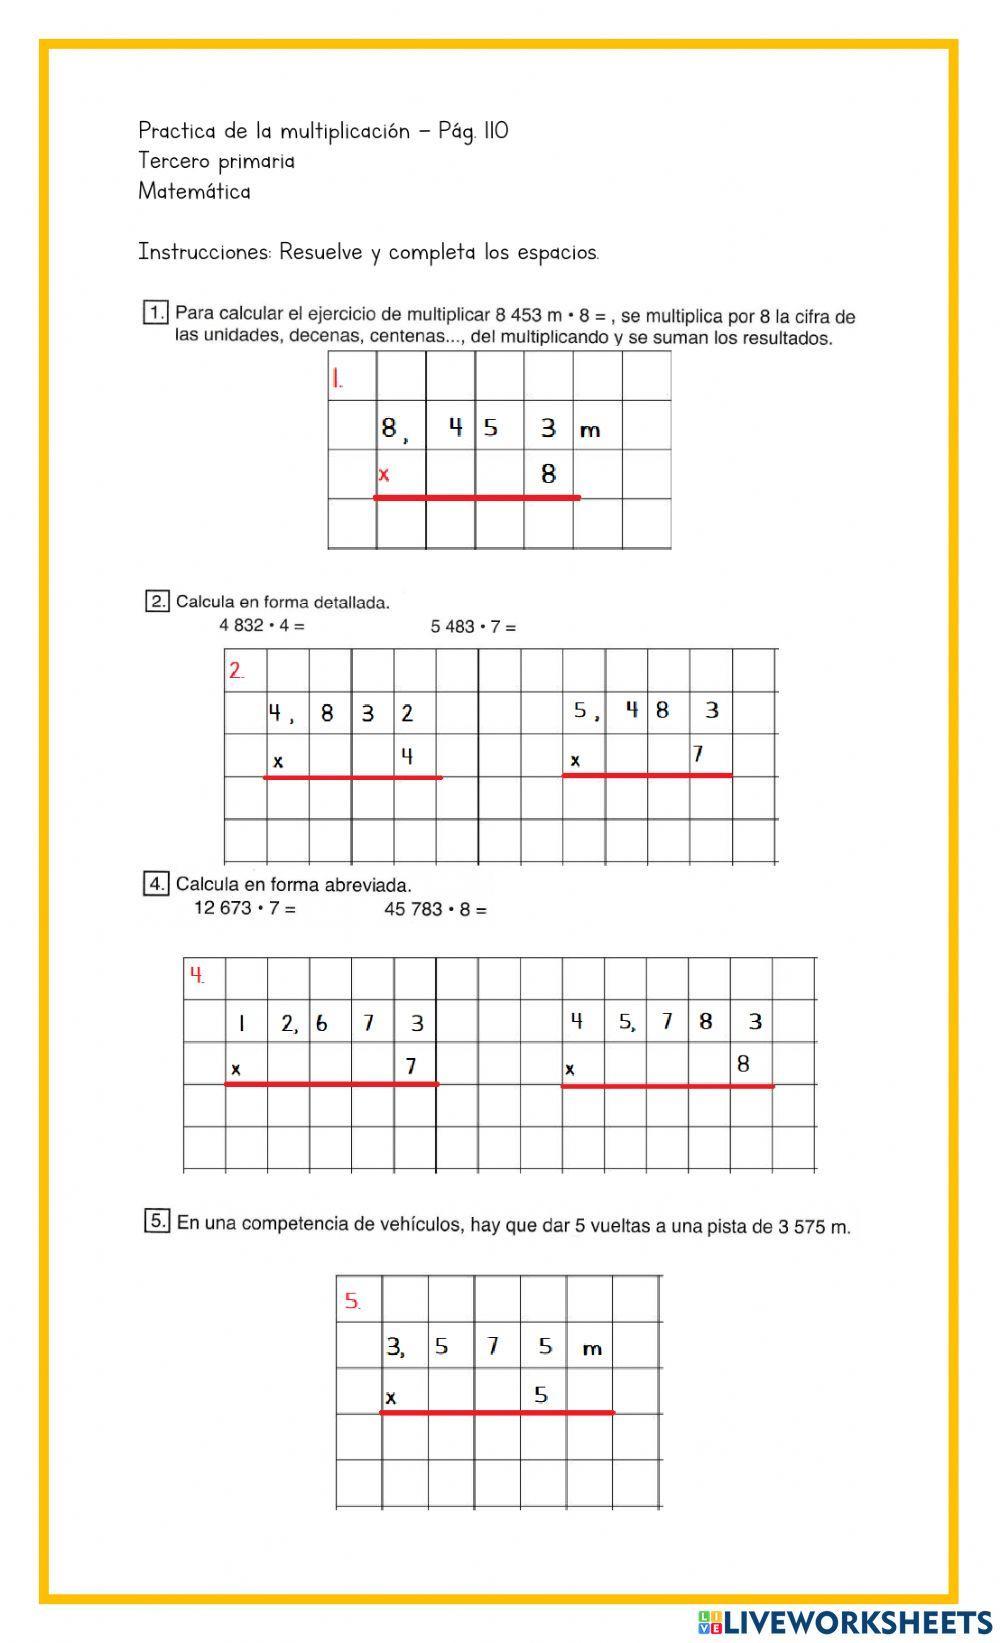 Práctica de la multiplicación - Pág. 110